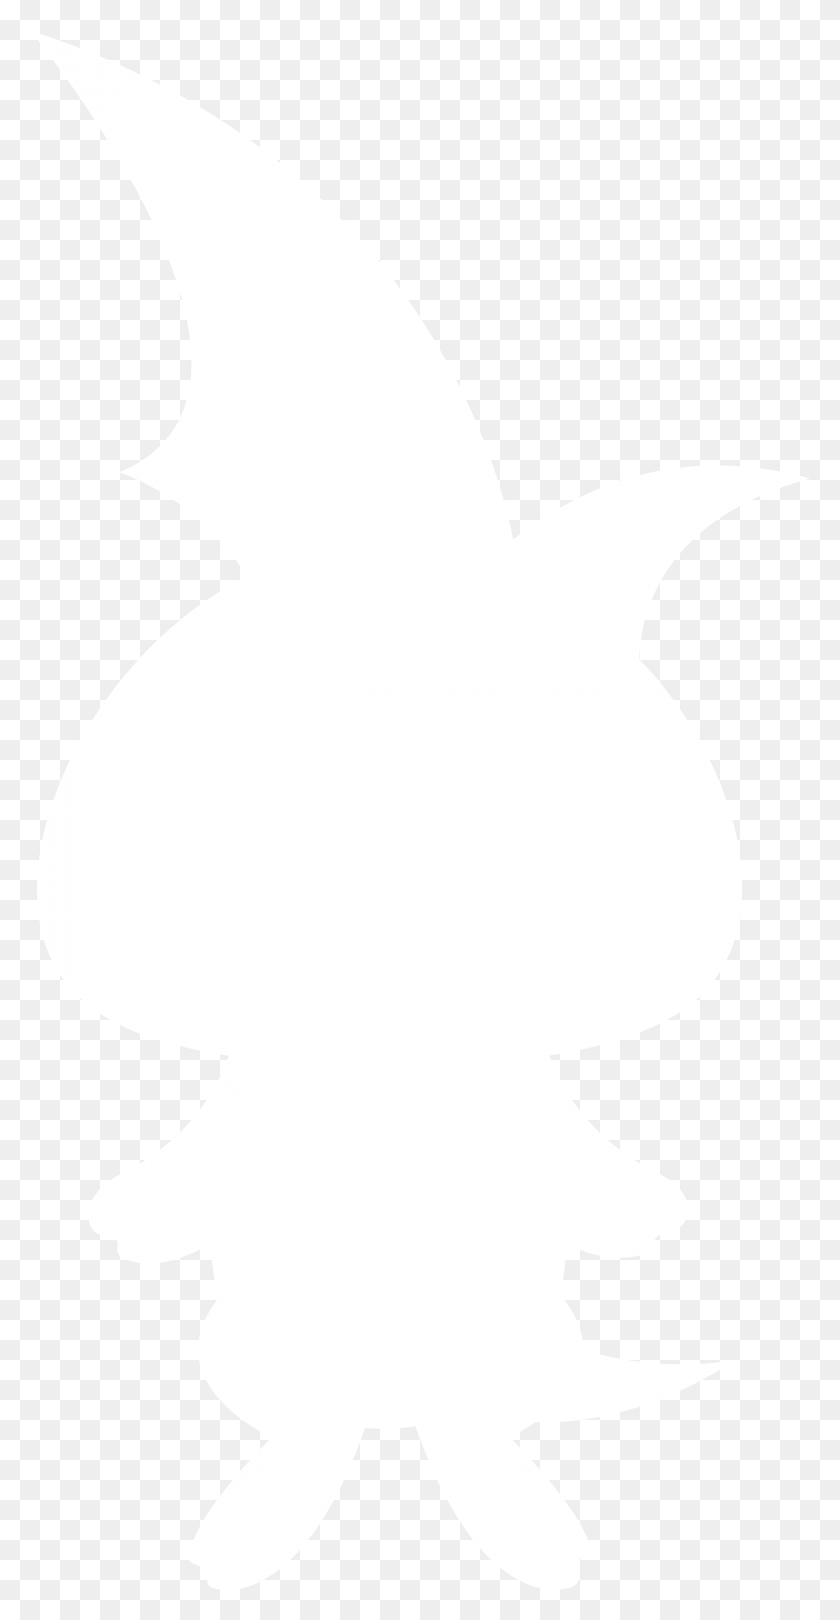 2400x4800 Khan Academy Aqualine Sapling Logo Черно-Белый Логотип Ihs Markit Белый, Трафарет, Человек Hd Png Скачать